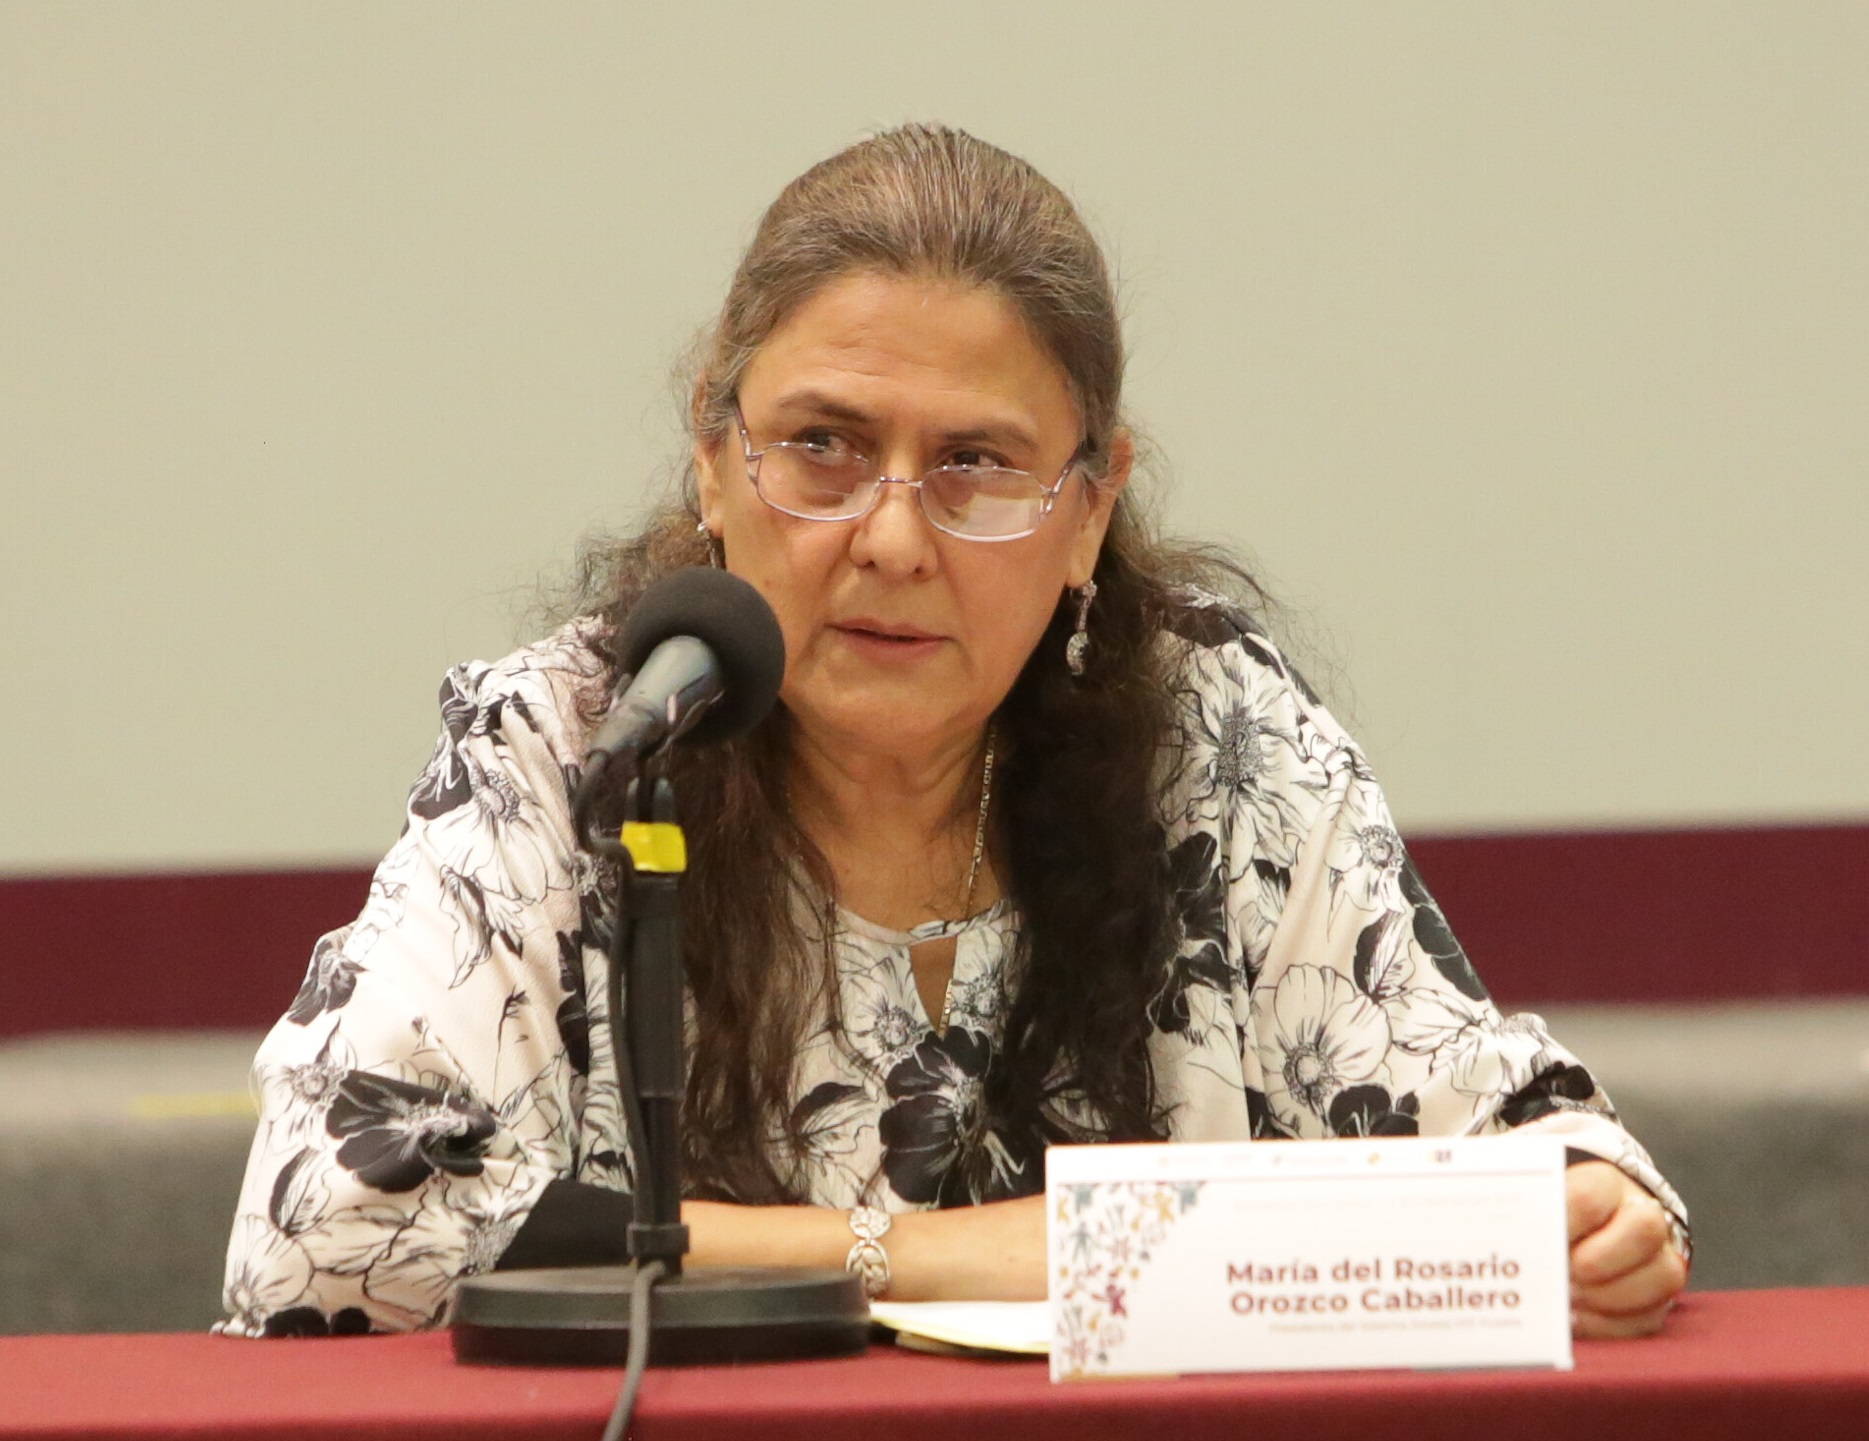 Eukid viola medidas cautelares al participar en reuniones: Rosario Orozco